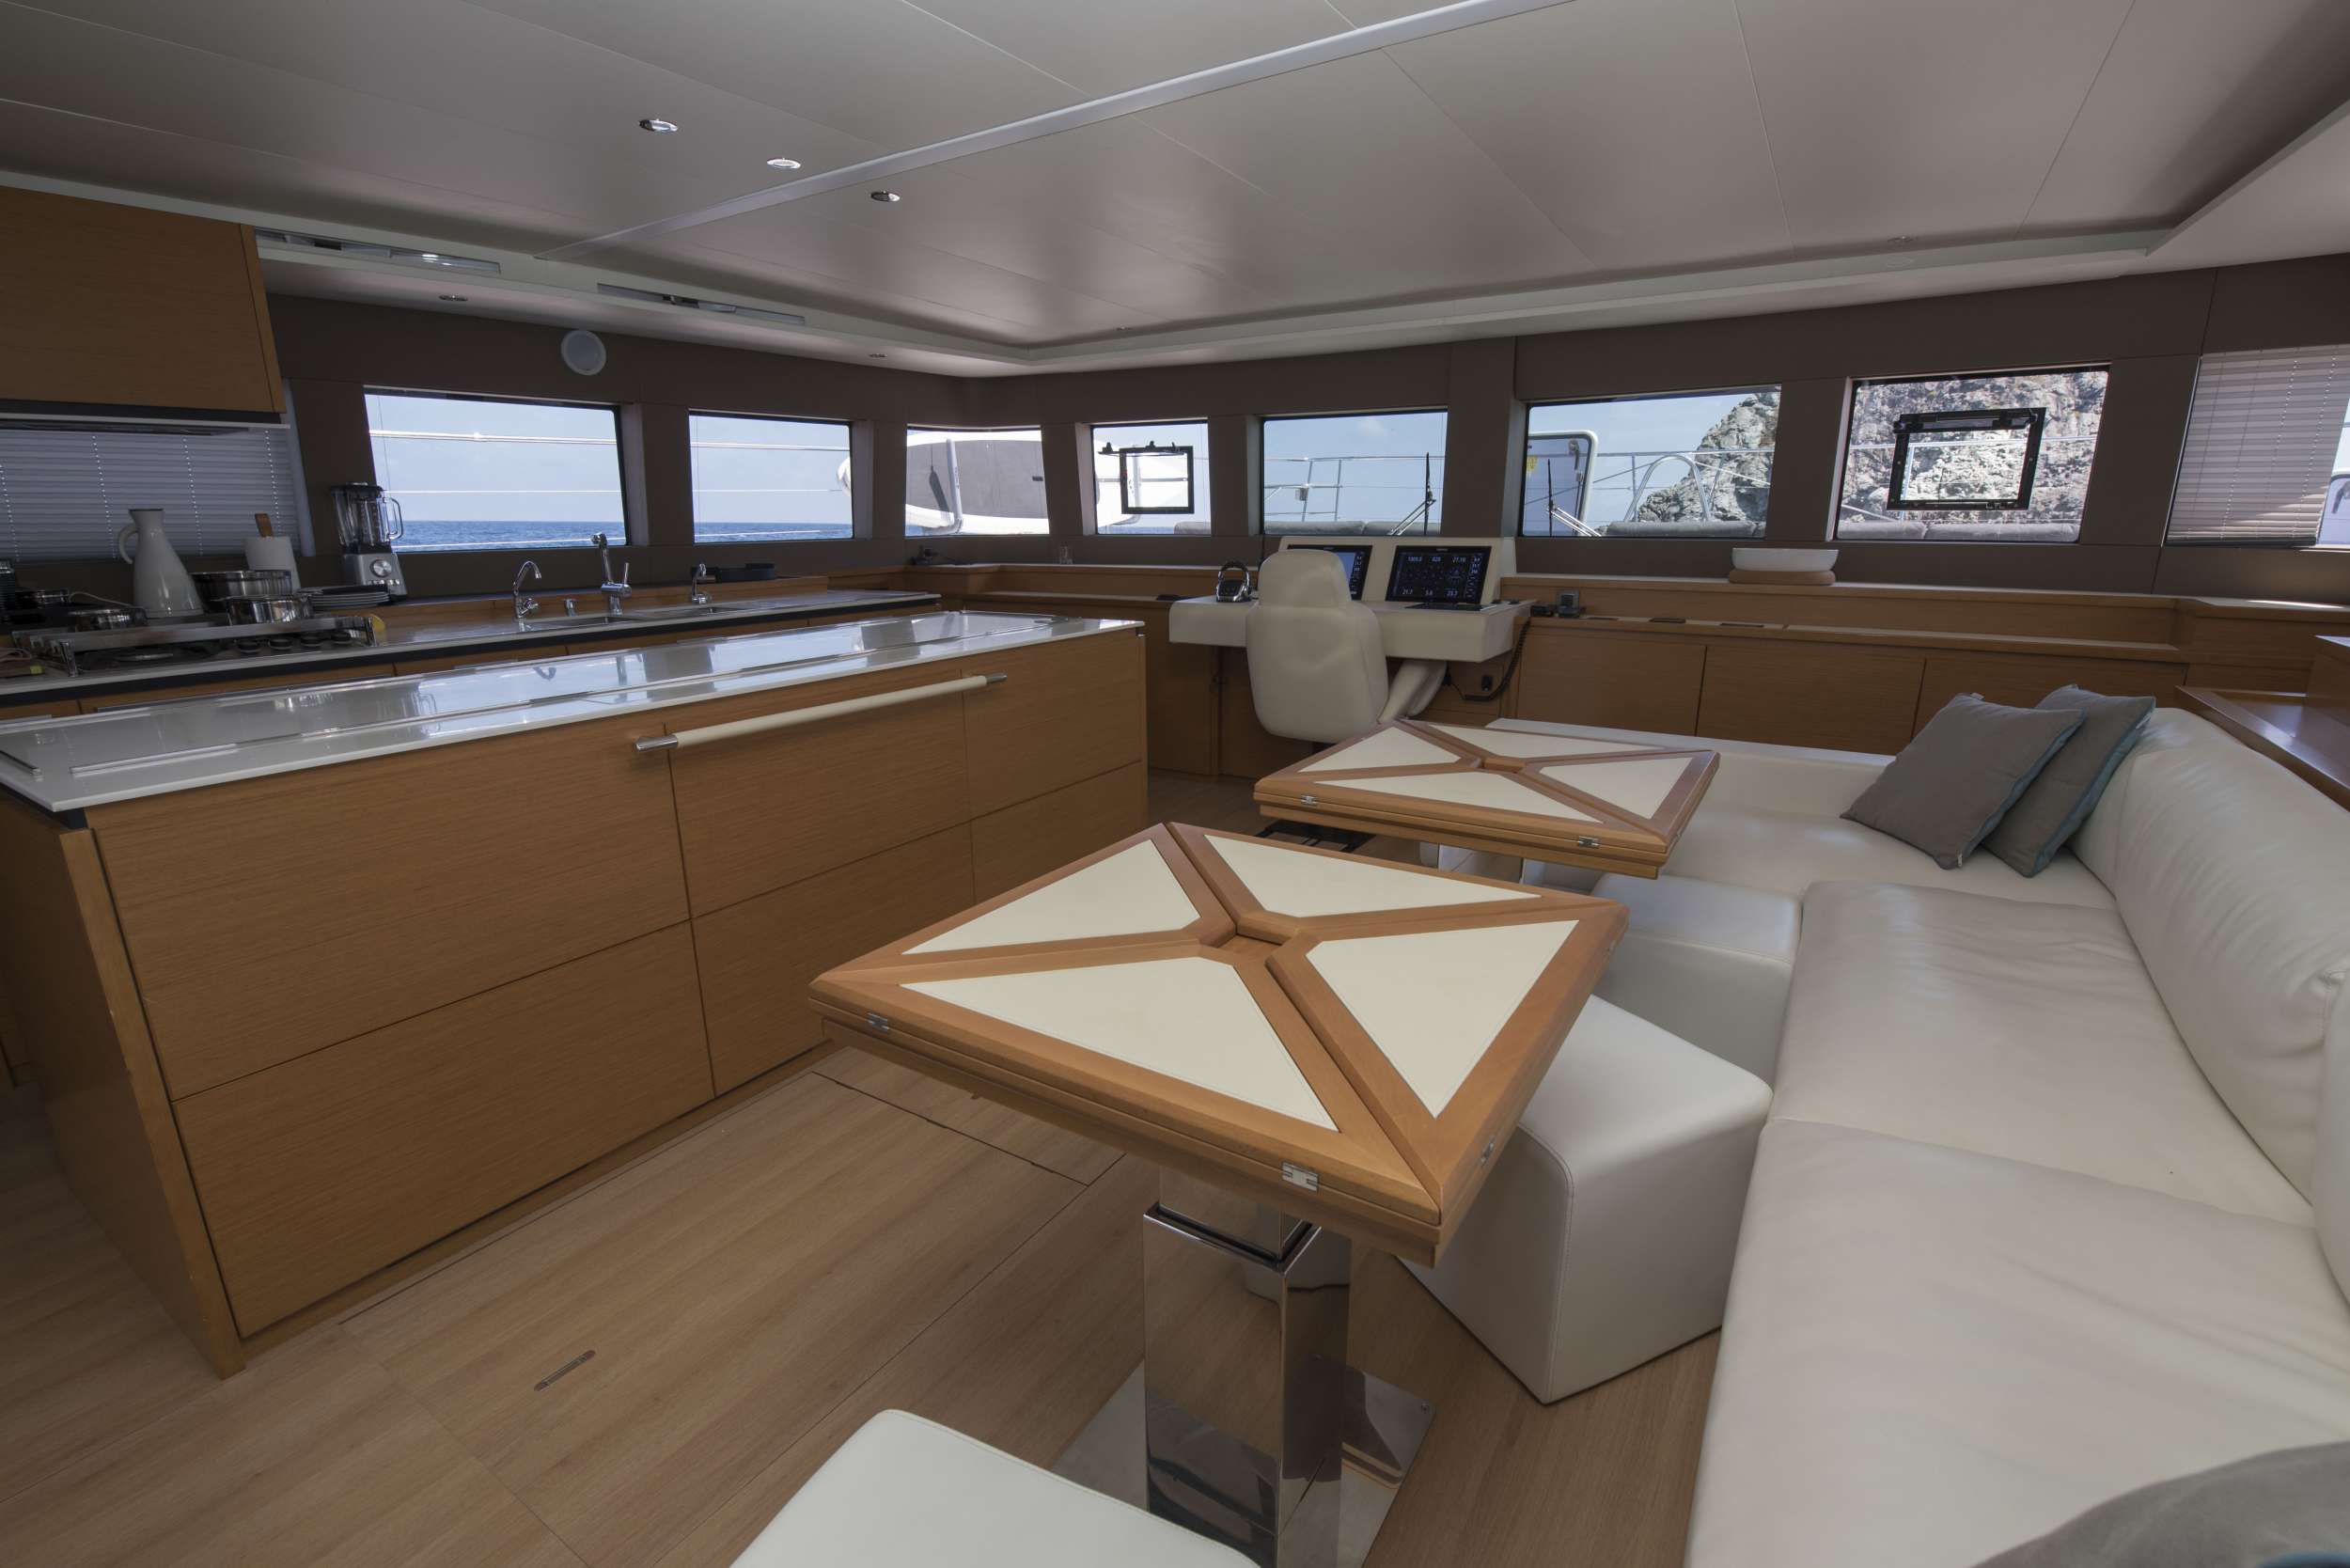 LA FREGATE - Motor Boat Charter France & Boat hire in Fr. Riviera, Corsica & Sardinia 2